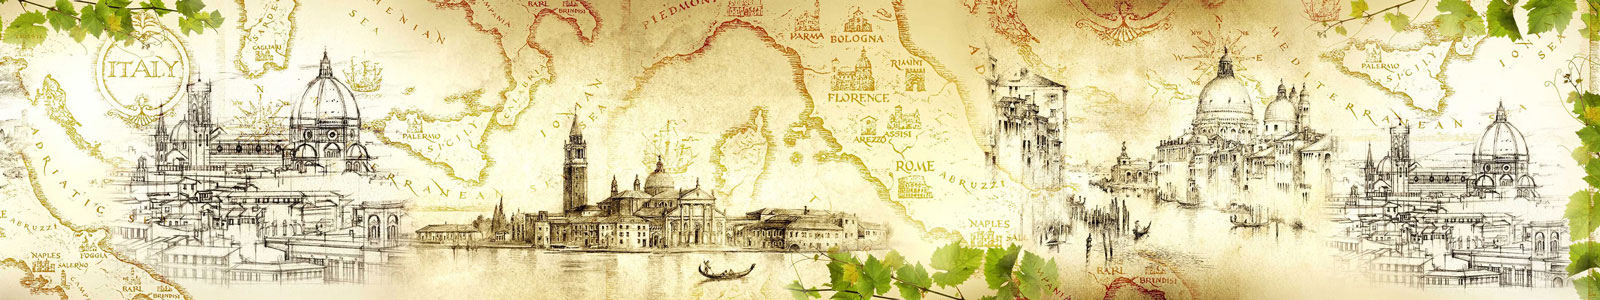 №6173 - Винтажный фон с рисунками итальянских городов